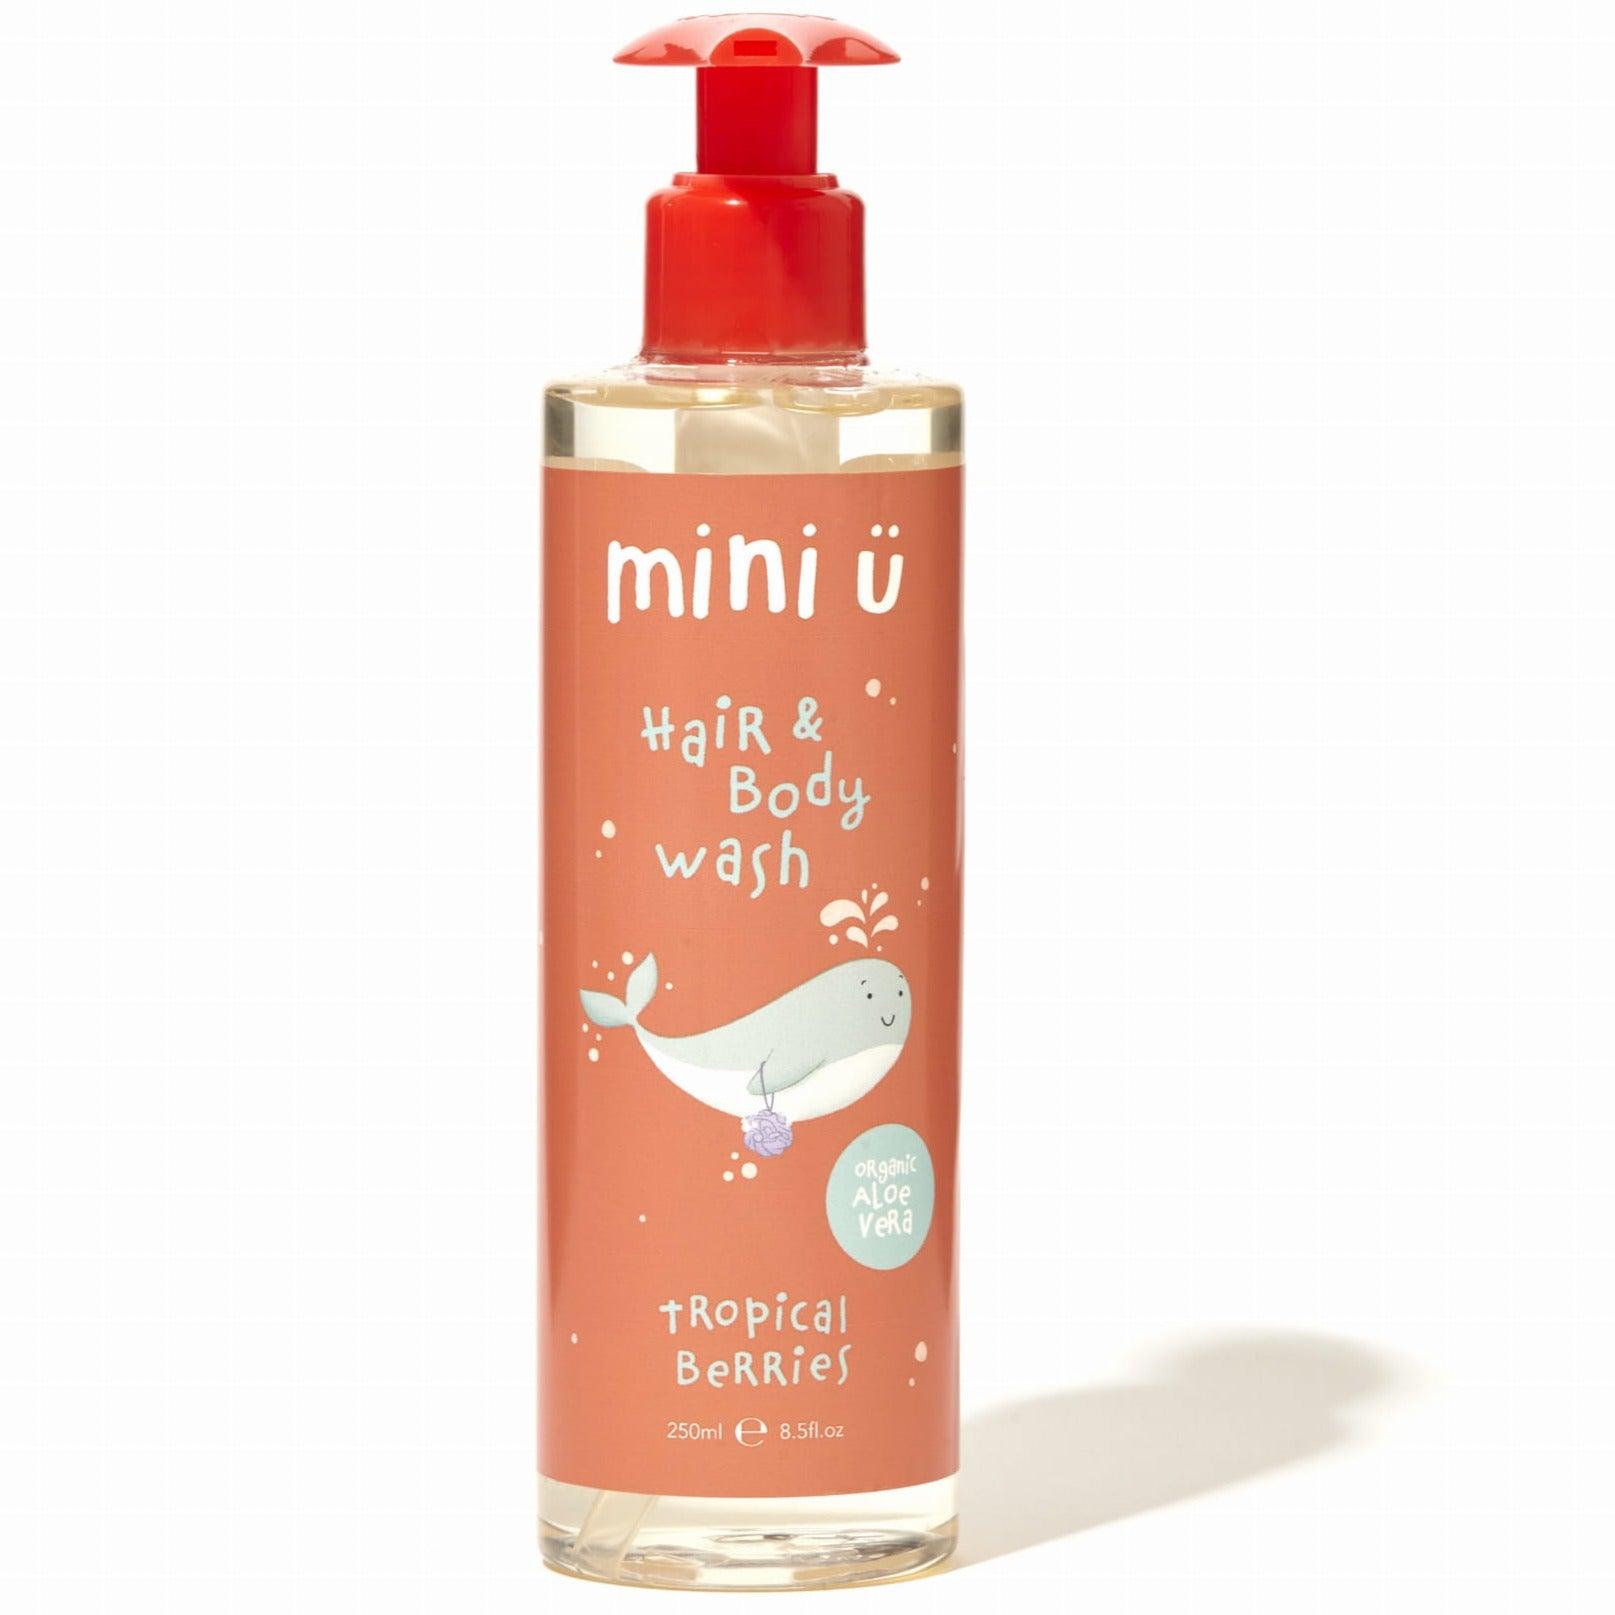 Mini-U: Tropical Berries body and hair wash gel